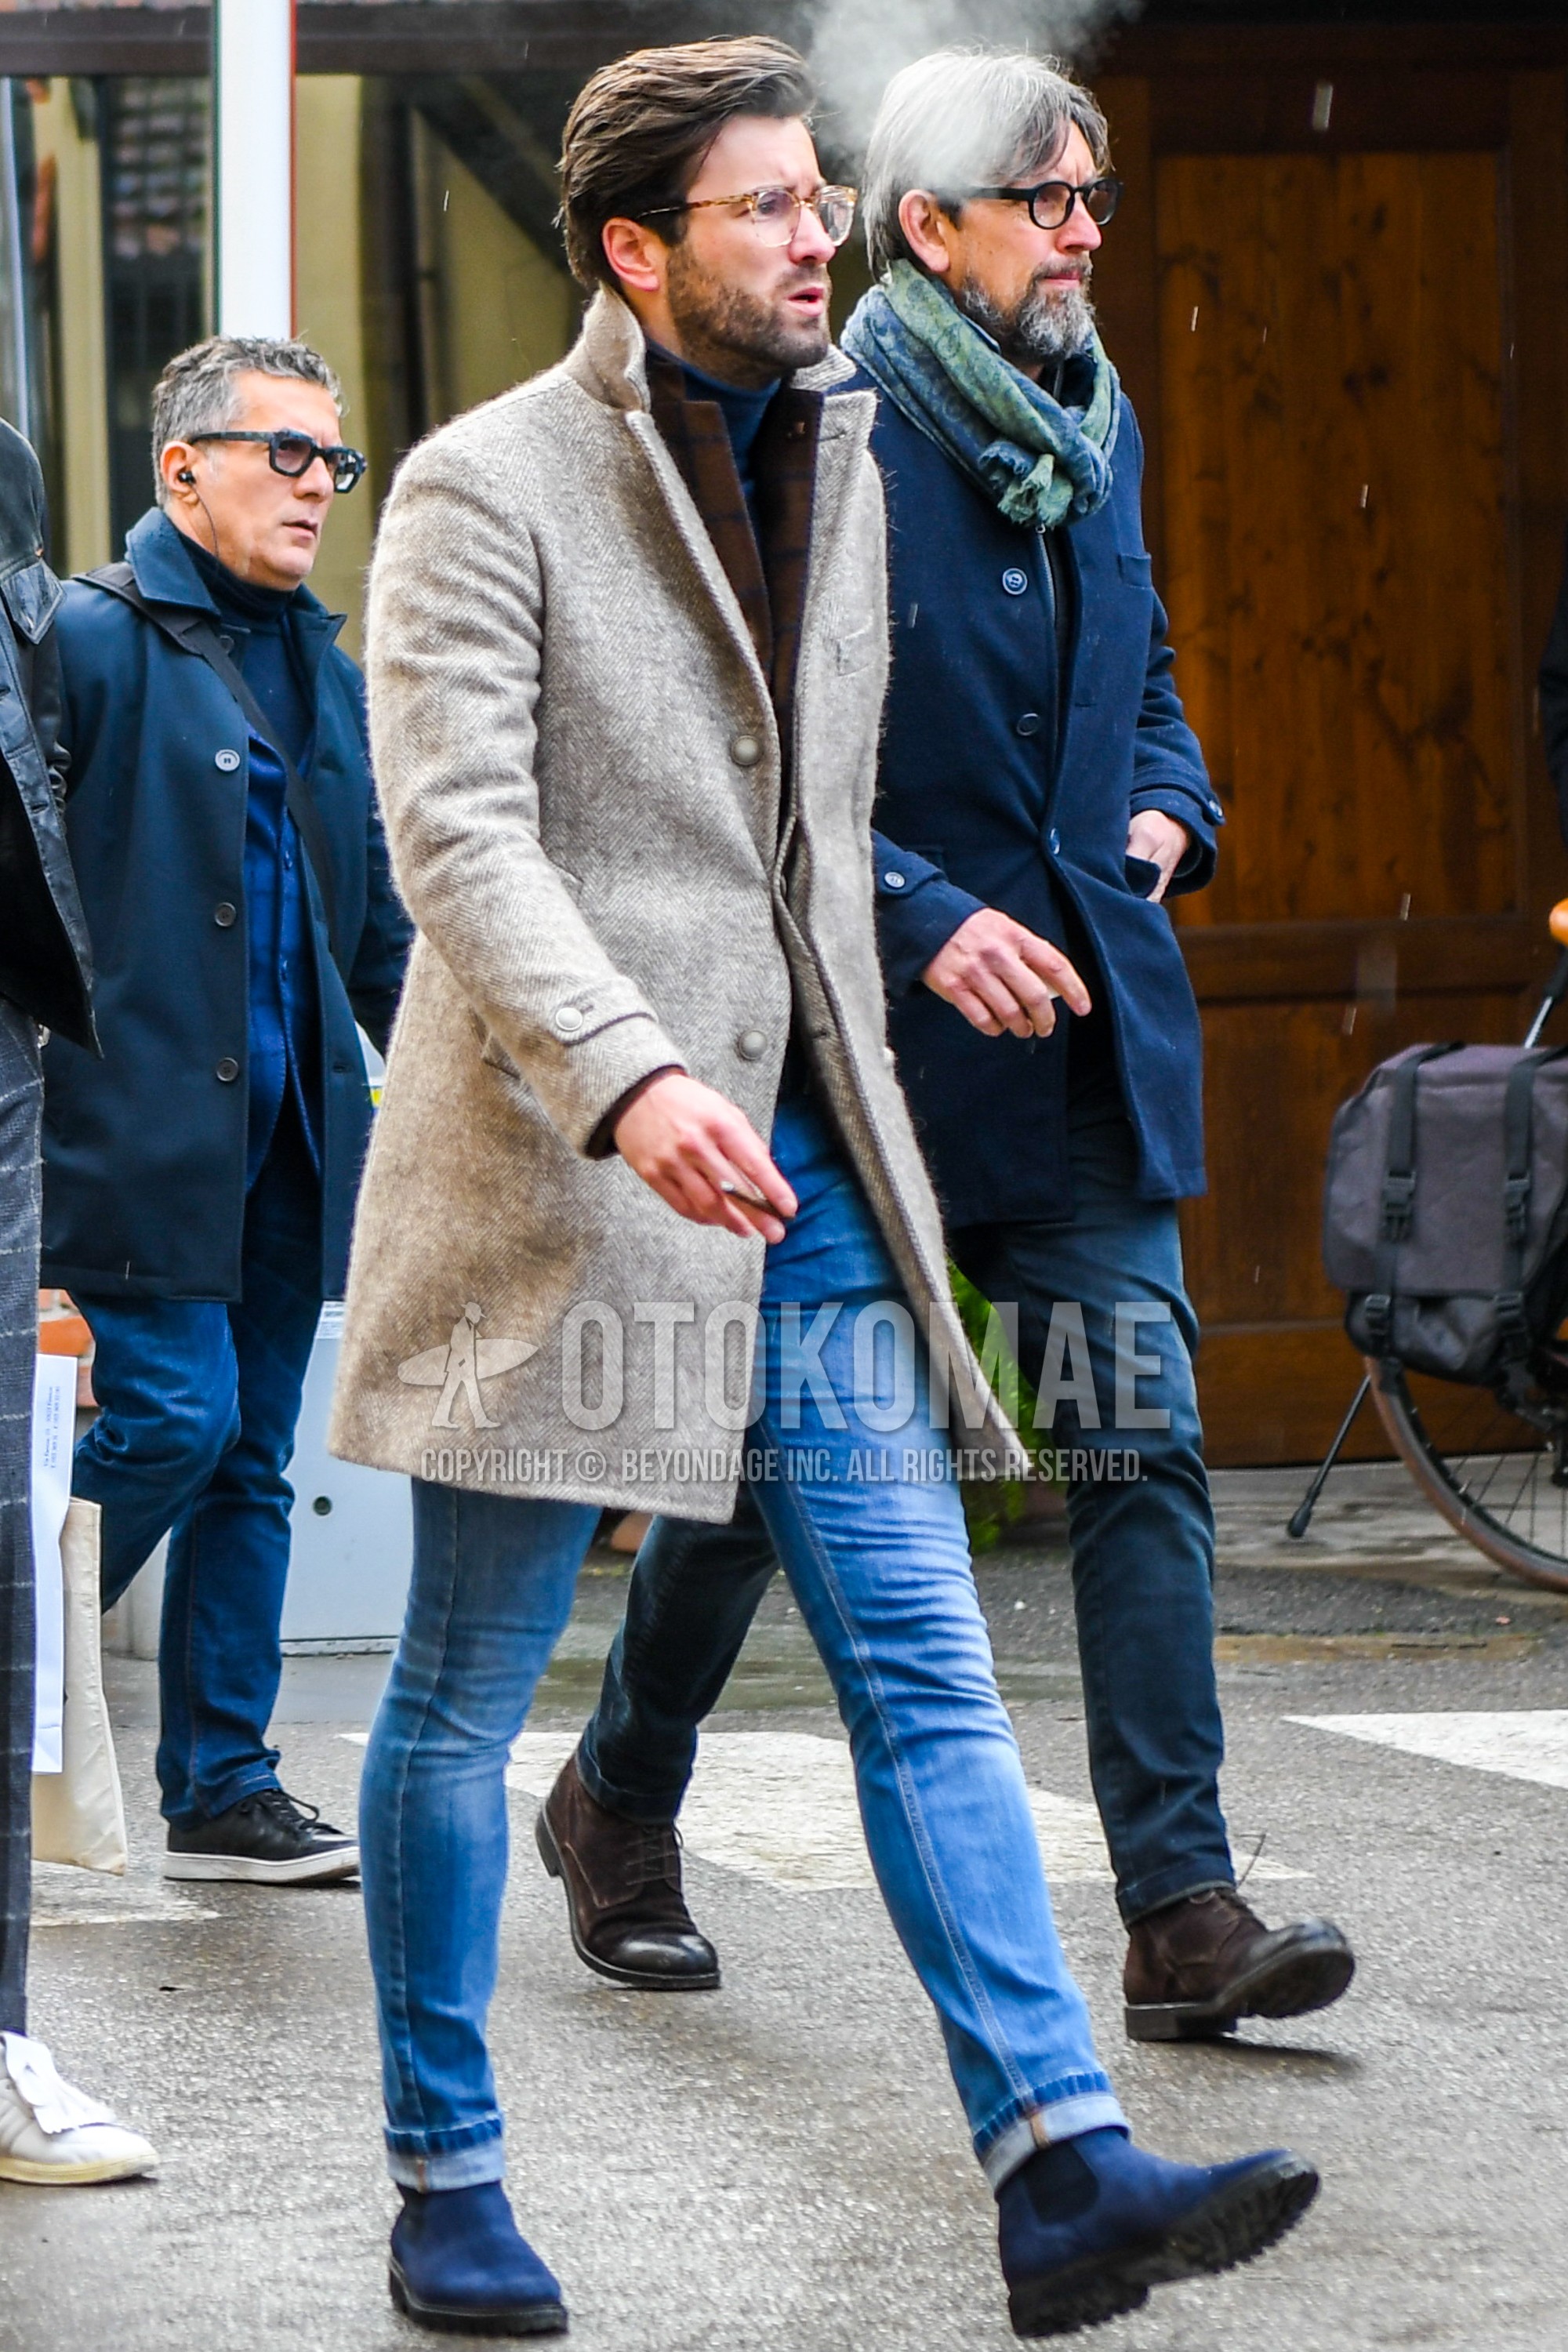 Men's autumn winter outfit with plain glasses, beige plain chester coat, brown plain tailored jacket, gray plain turtleneck knit, blue plain denim/jeans, blue side-gore boots.